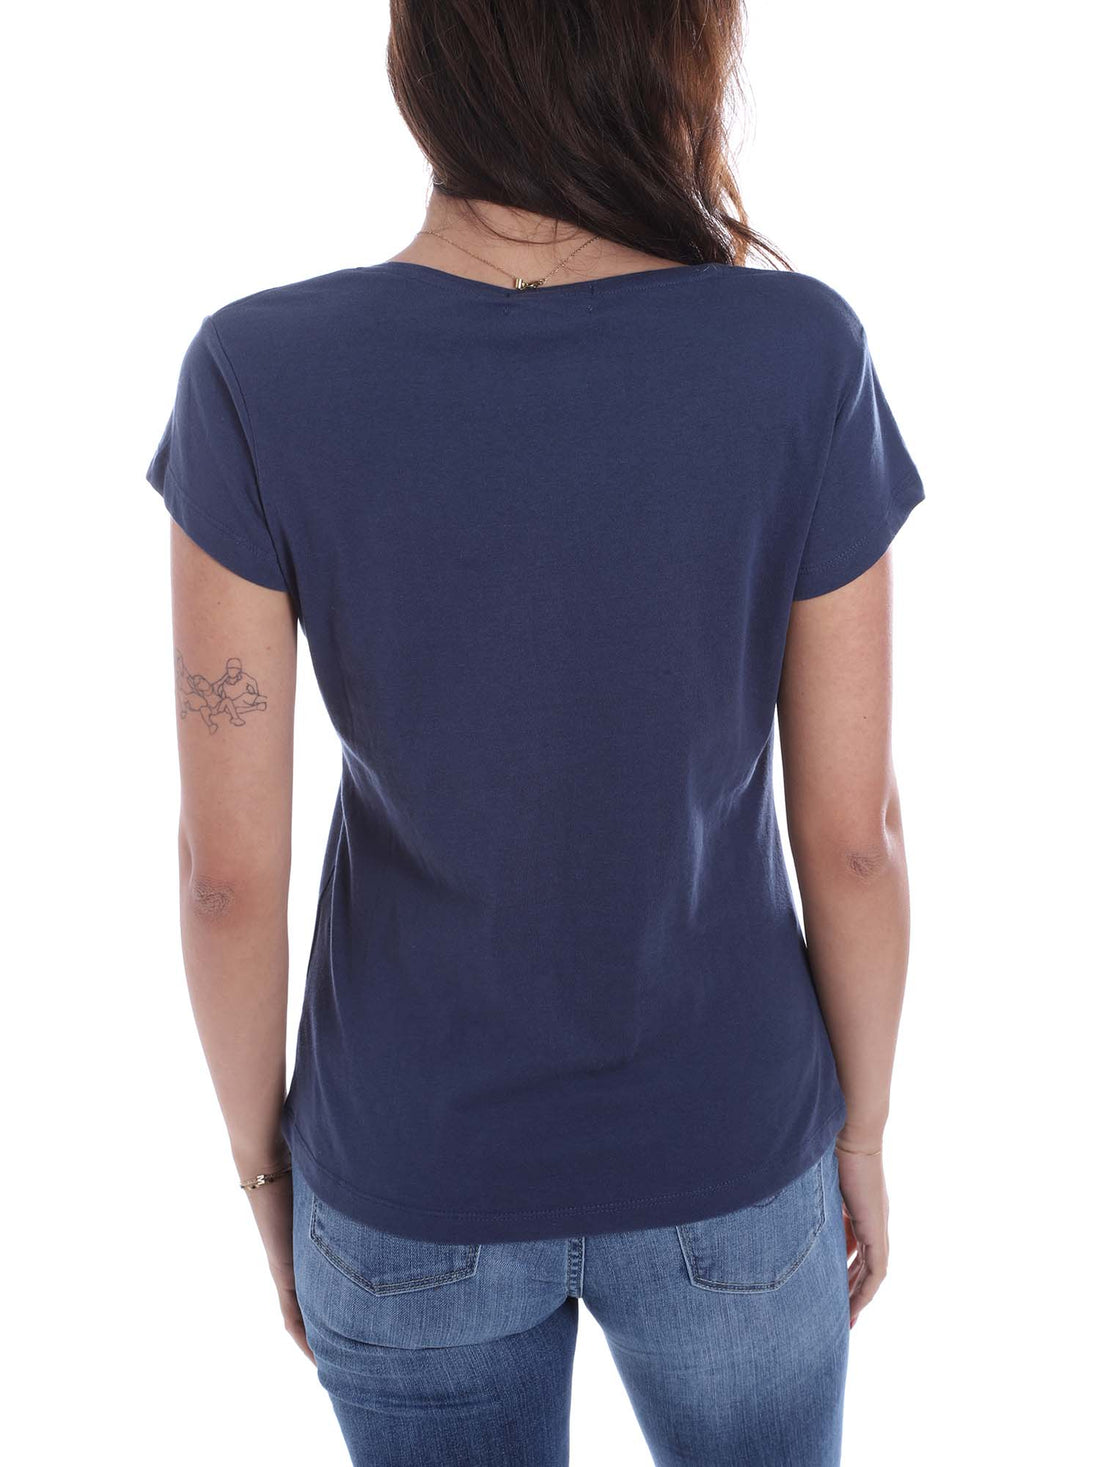 T-shirt Blu Yes-zee